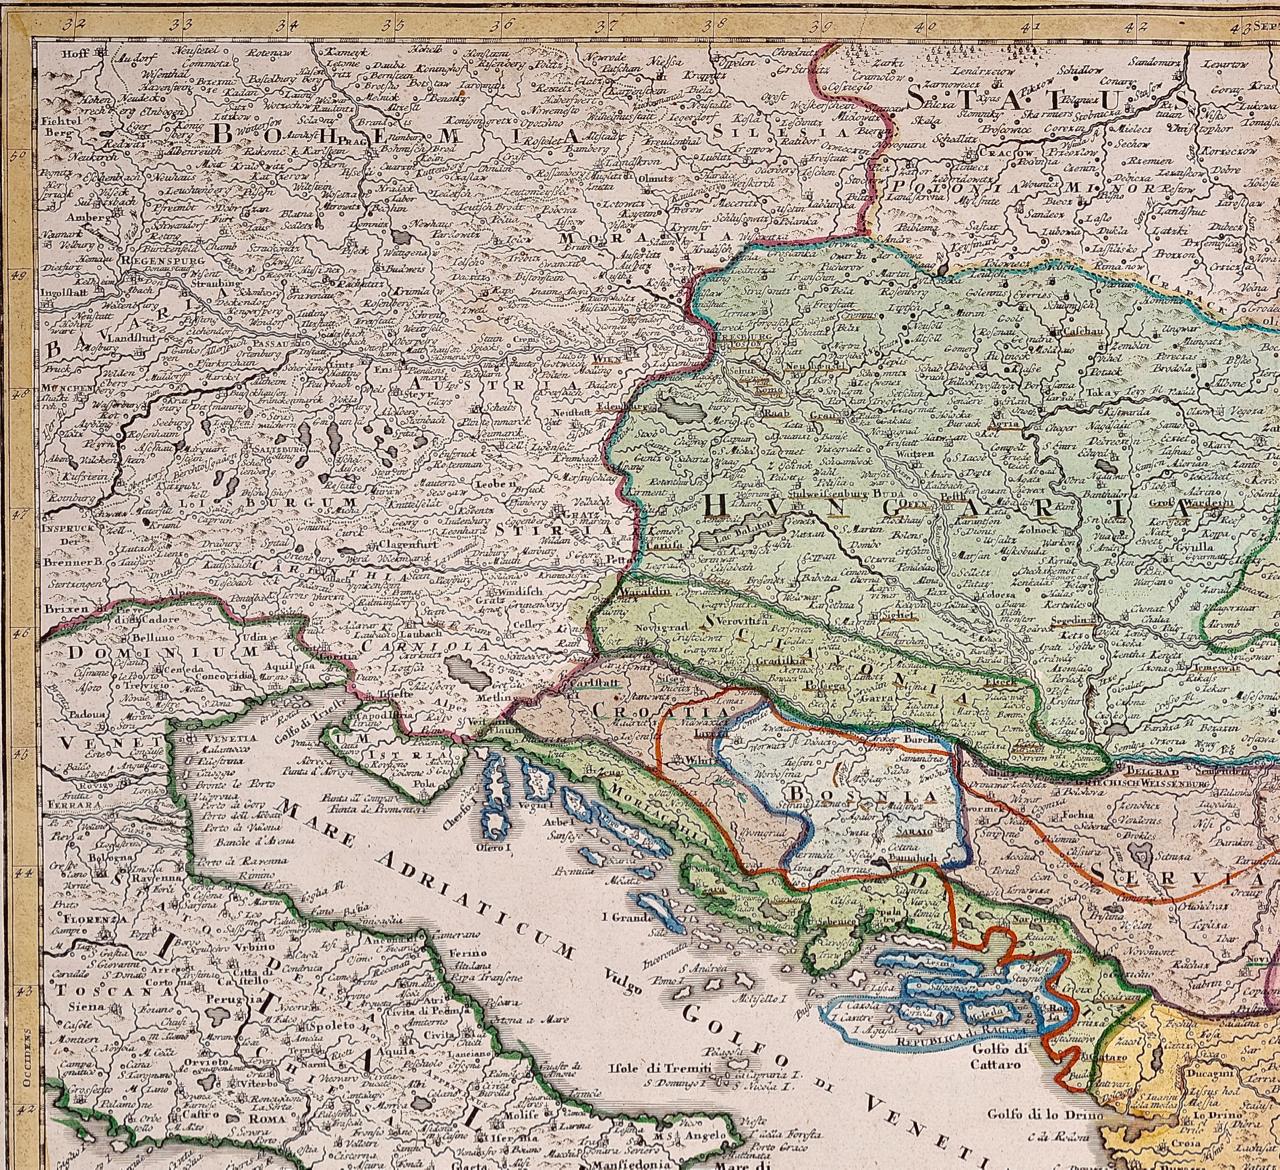 Danube- Fluss, Italien, Griechenland und Kroatien: Eine handkolorierte Karte von Homann aus dem 18. Jahrhundert  – Print von Johann Baptist Homann